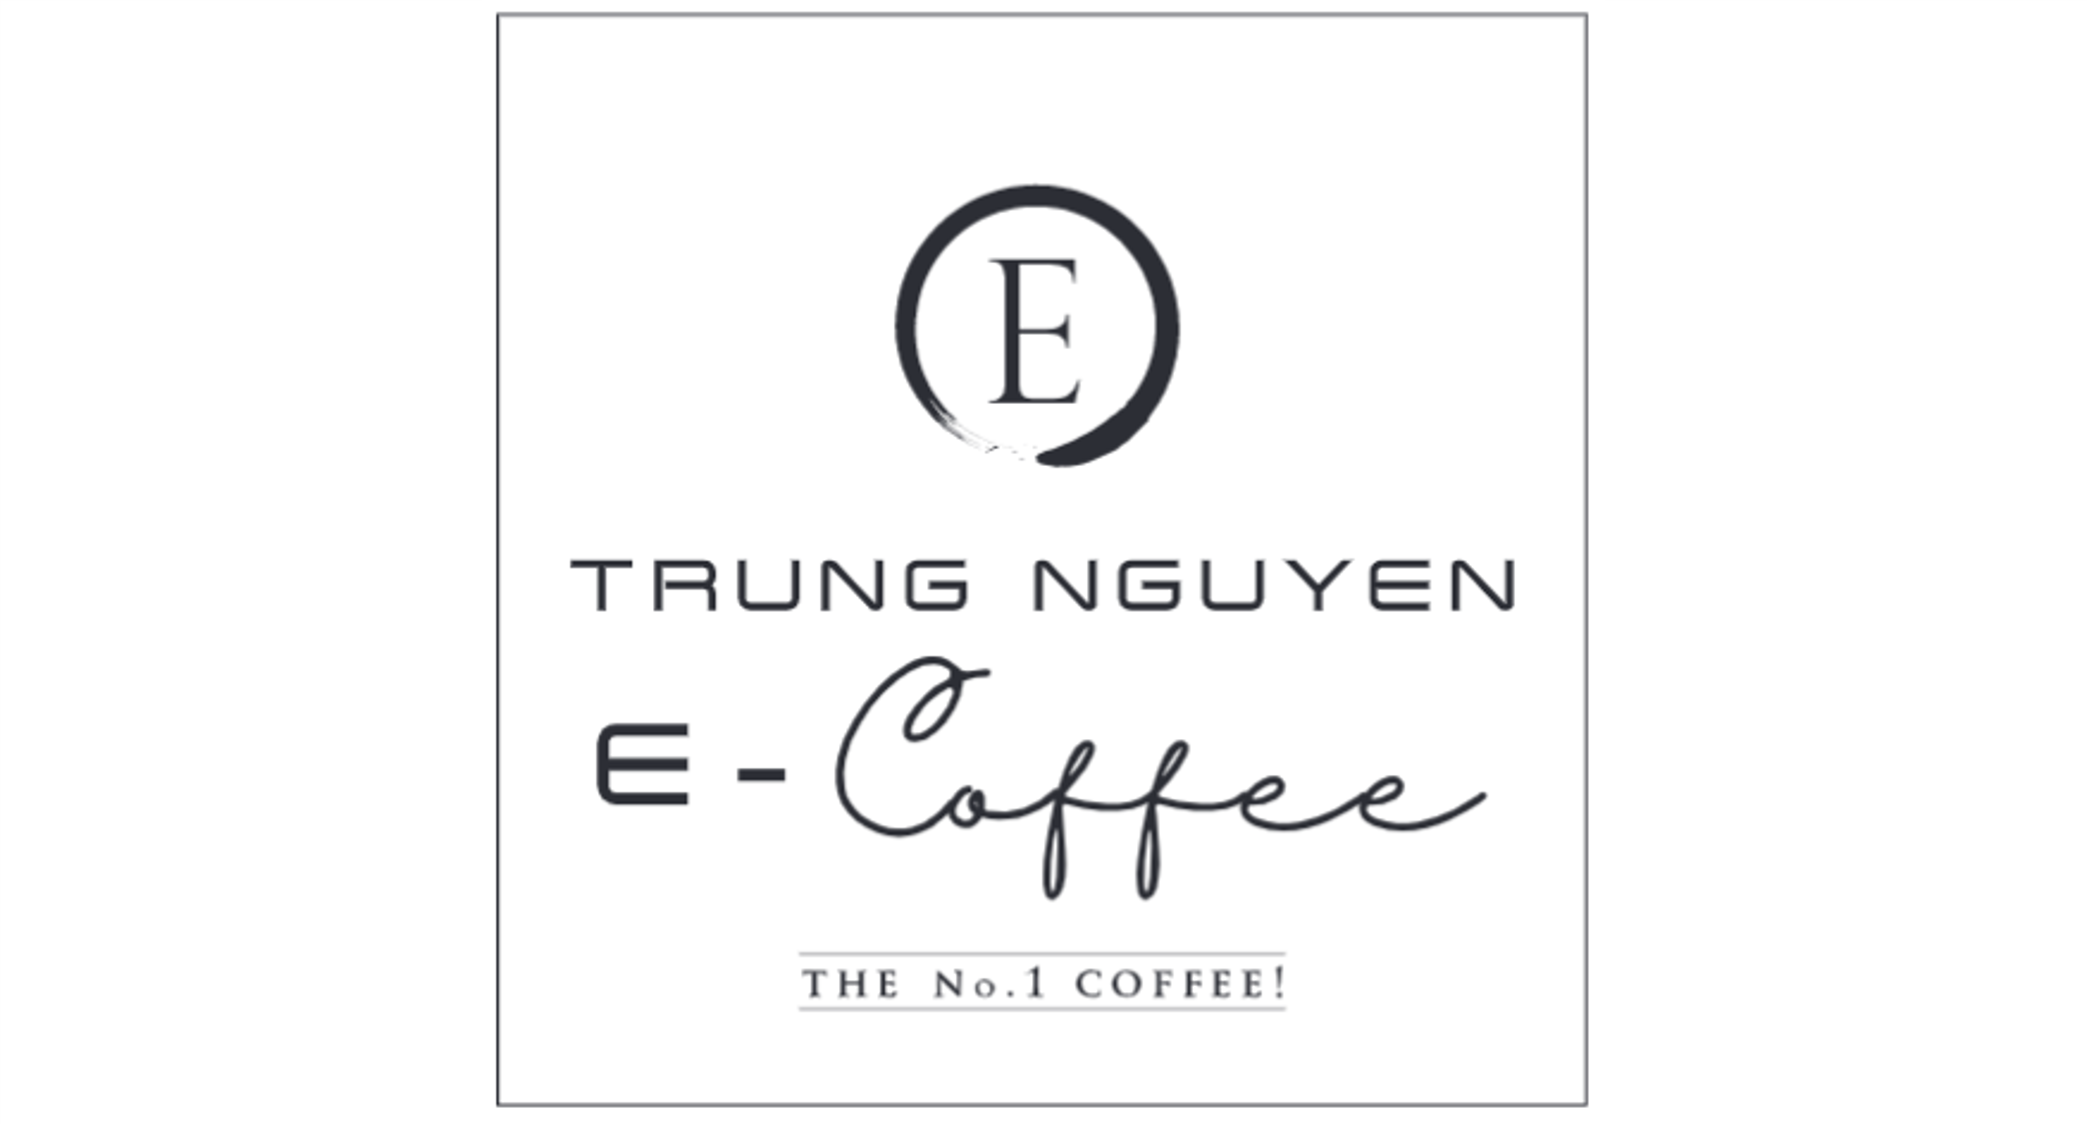 TRUNG NGUYEN E-COFFEE